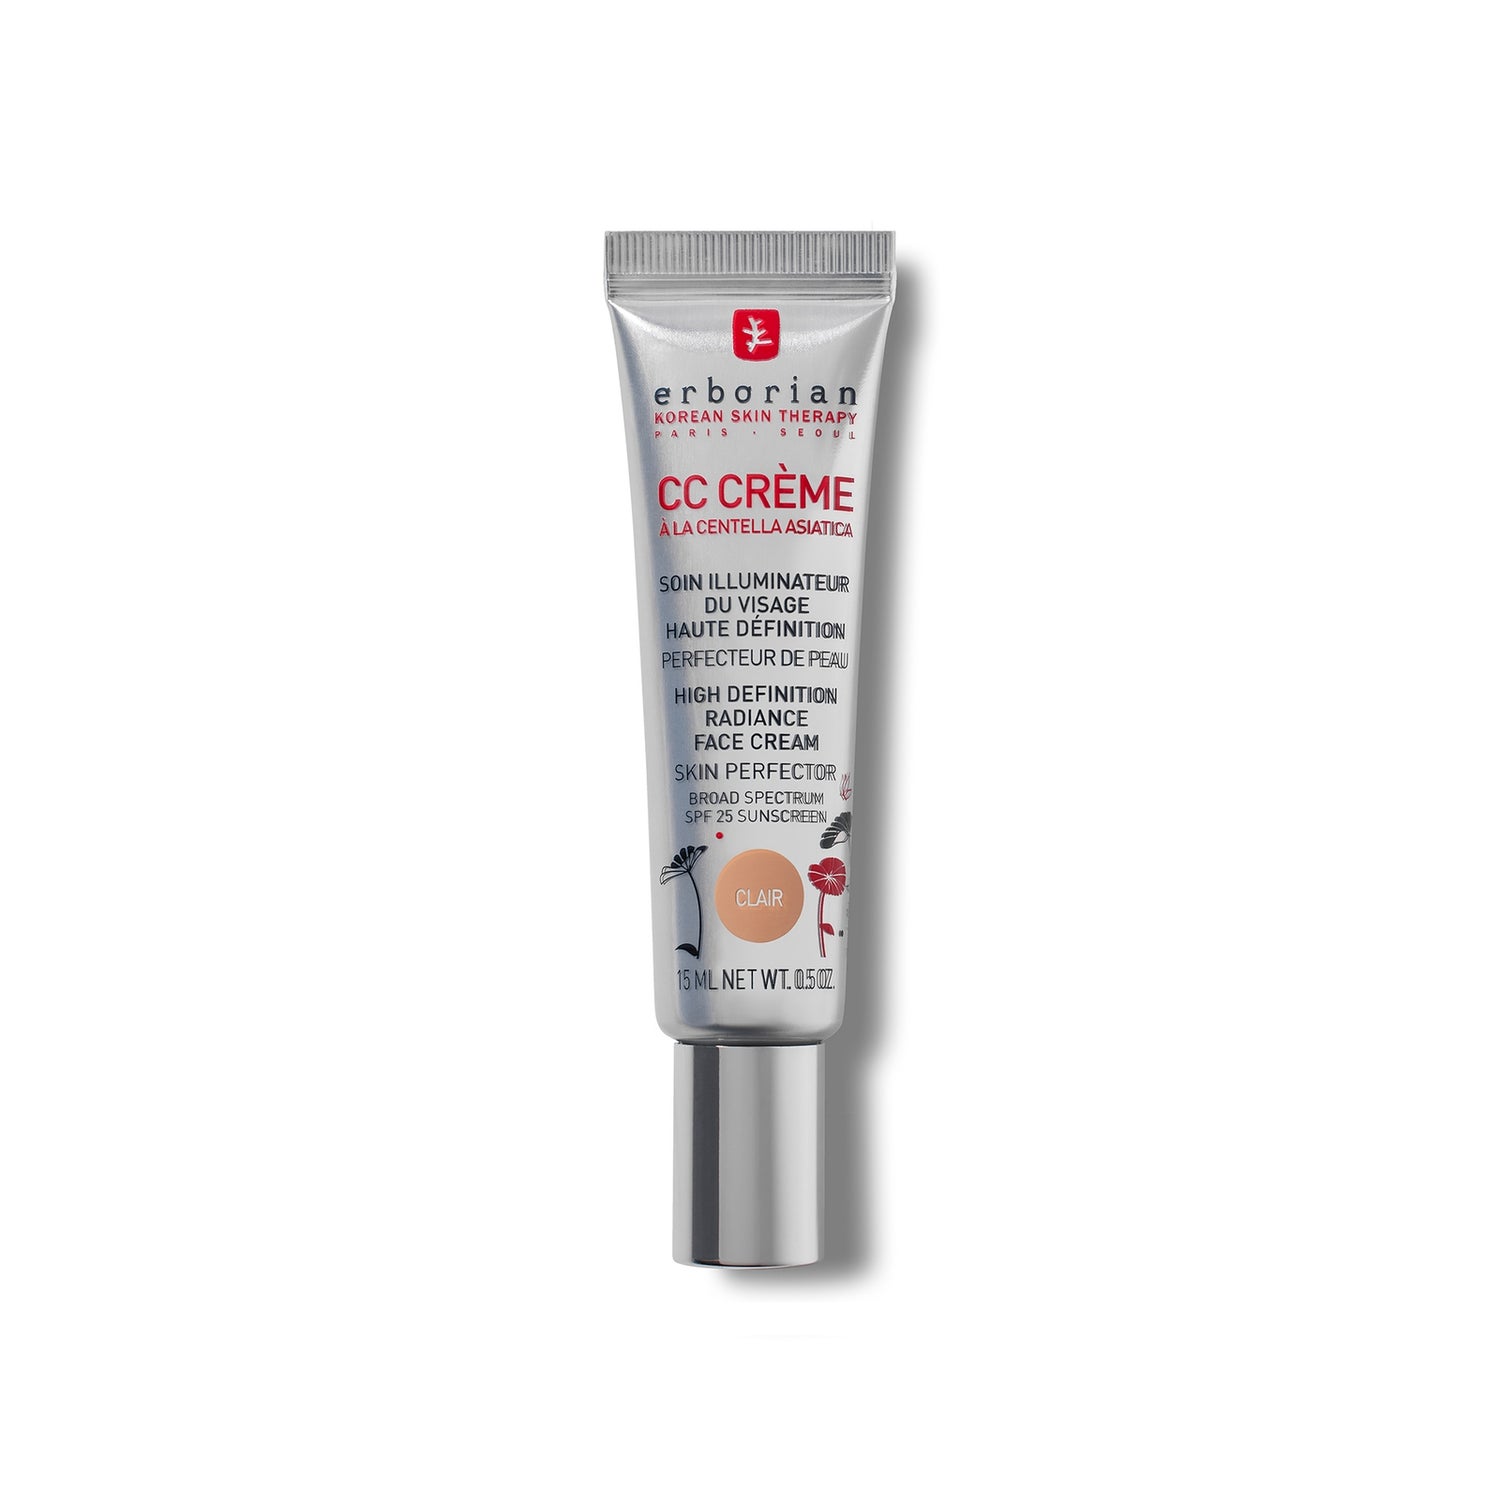 CC Cream 15ml - Średnio kryjący, lekki podkład/krem z SPF25 dla wszystkich typów skóry, różne odcienie